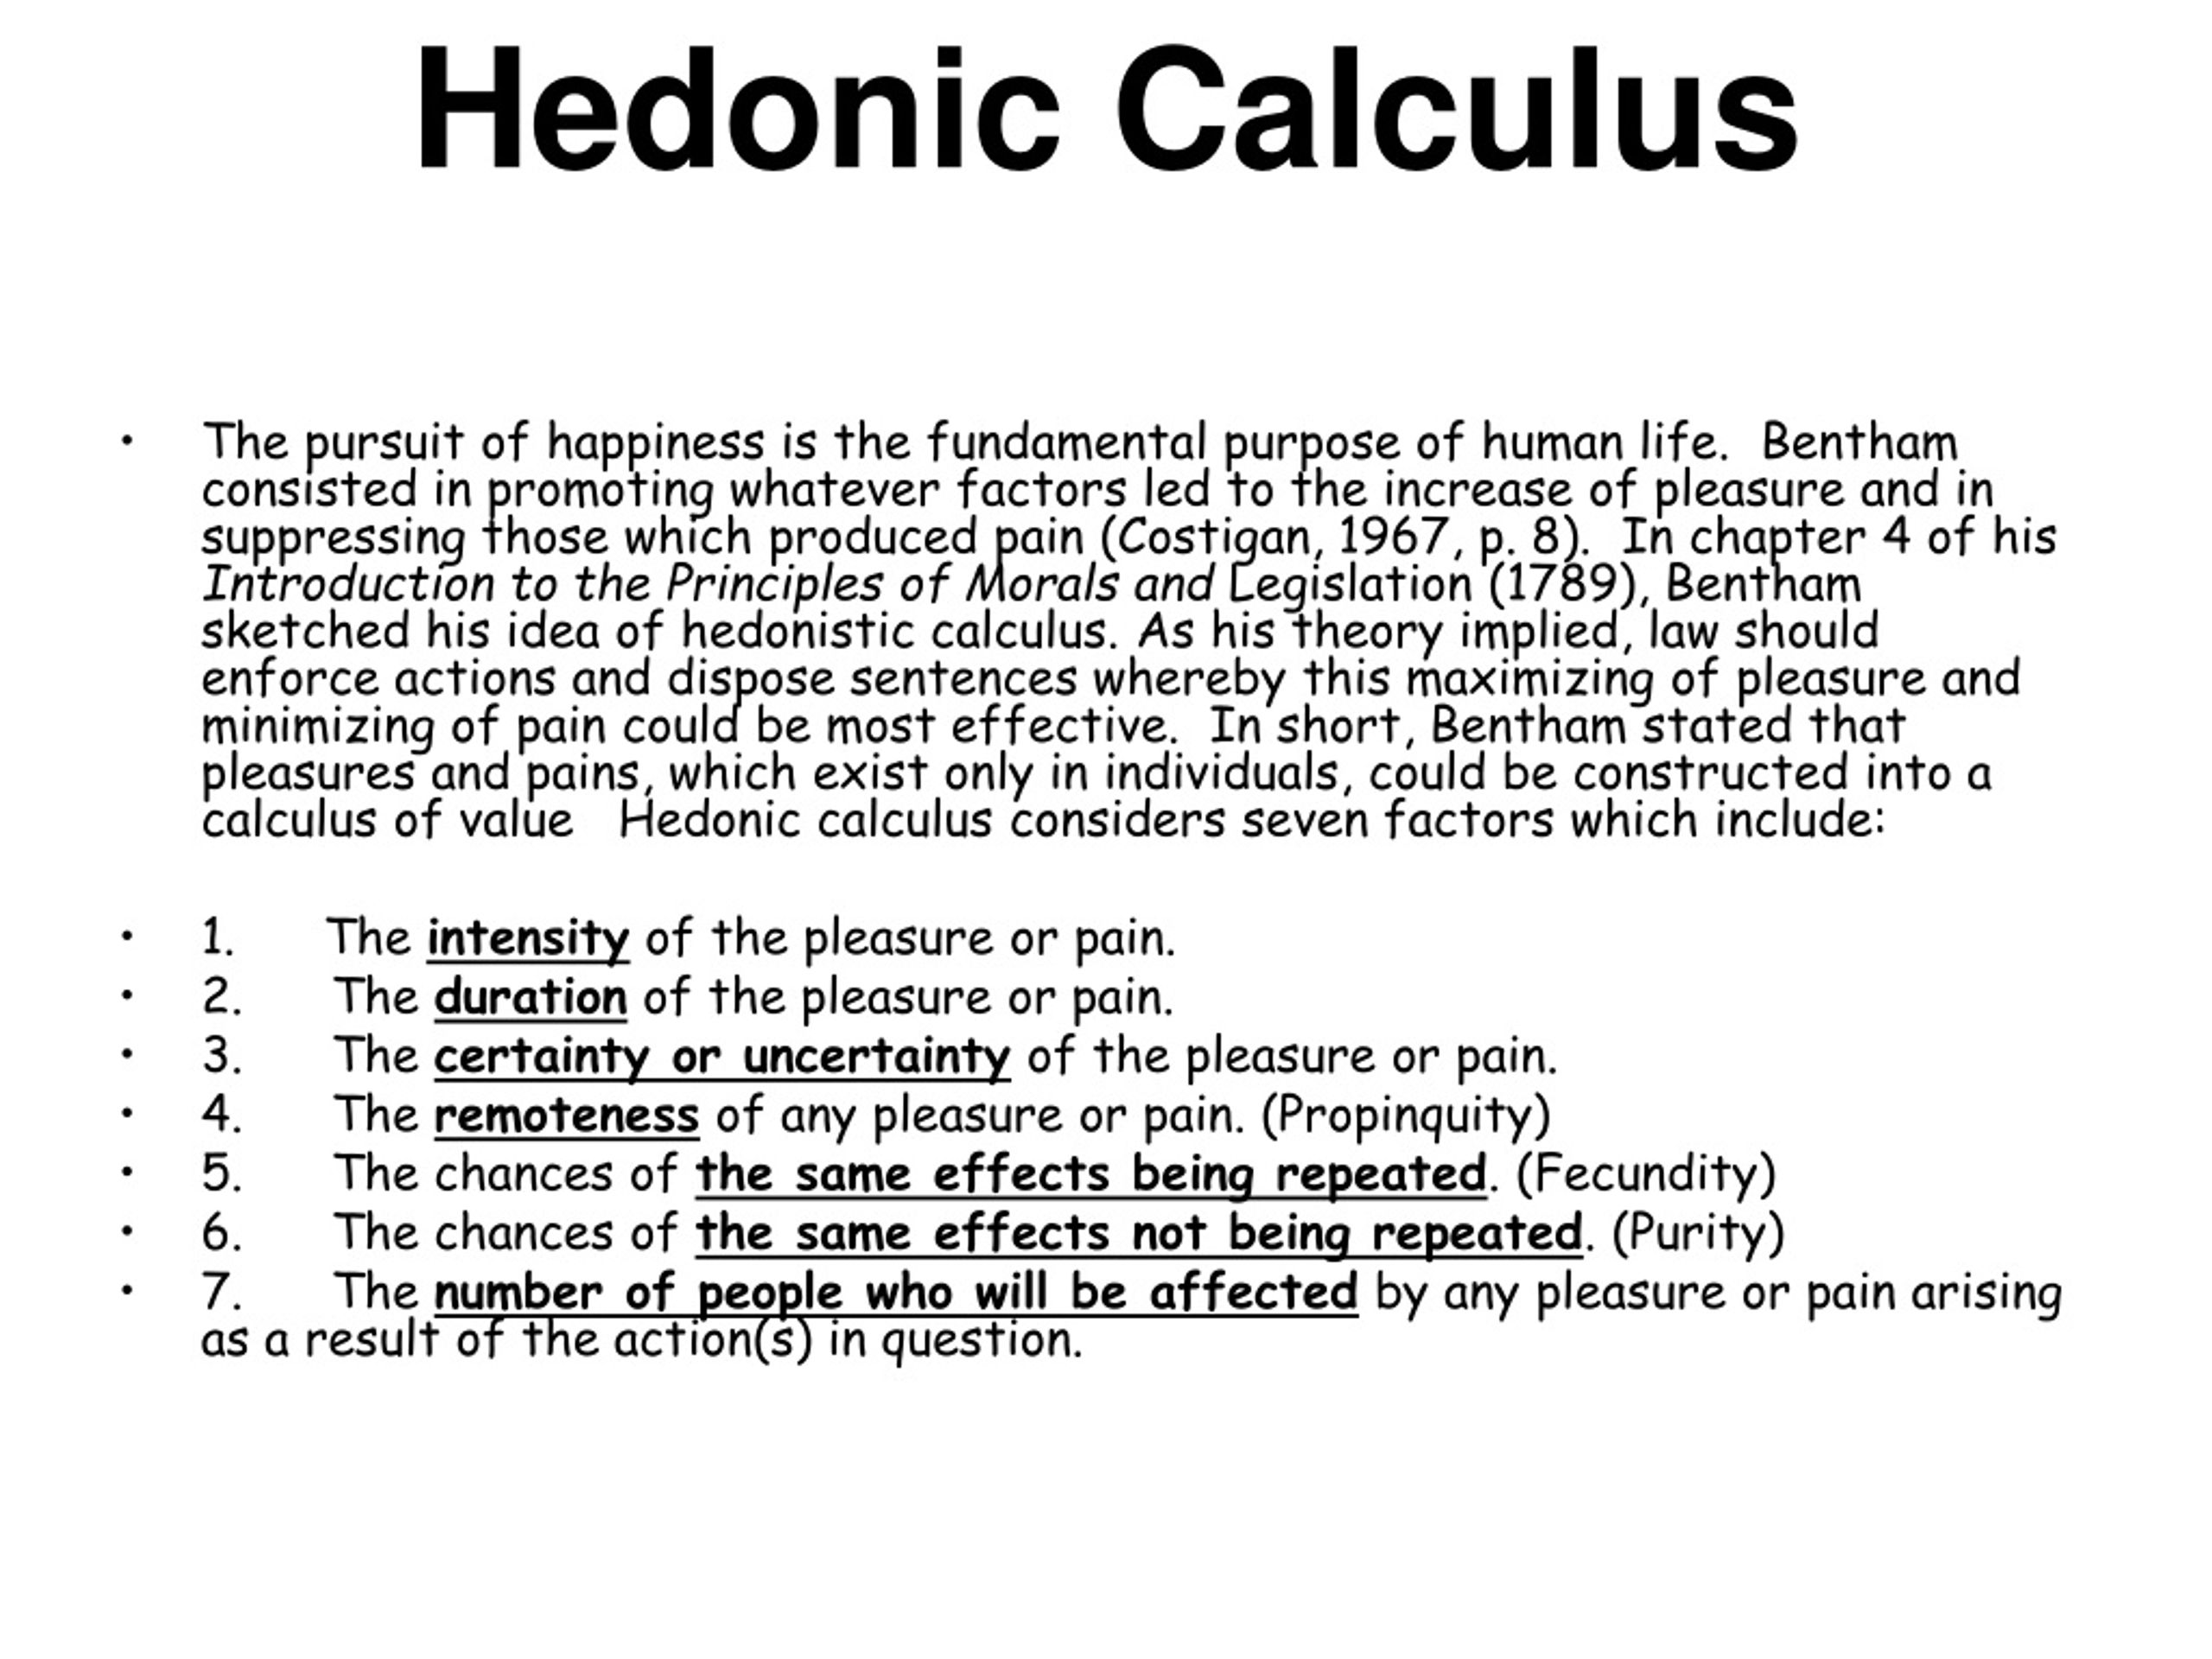 hedonic calculus